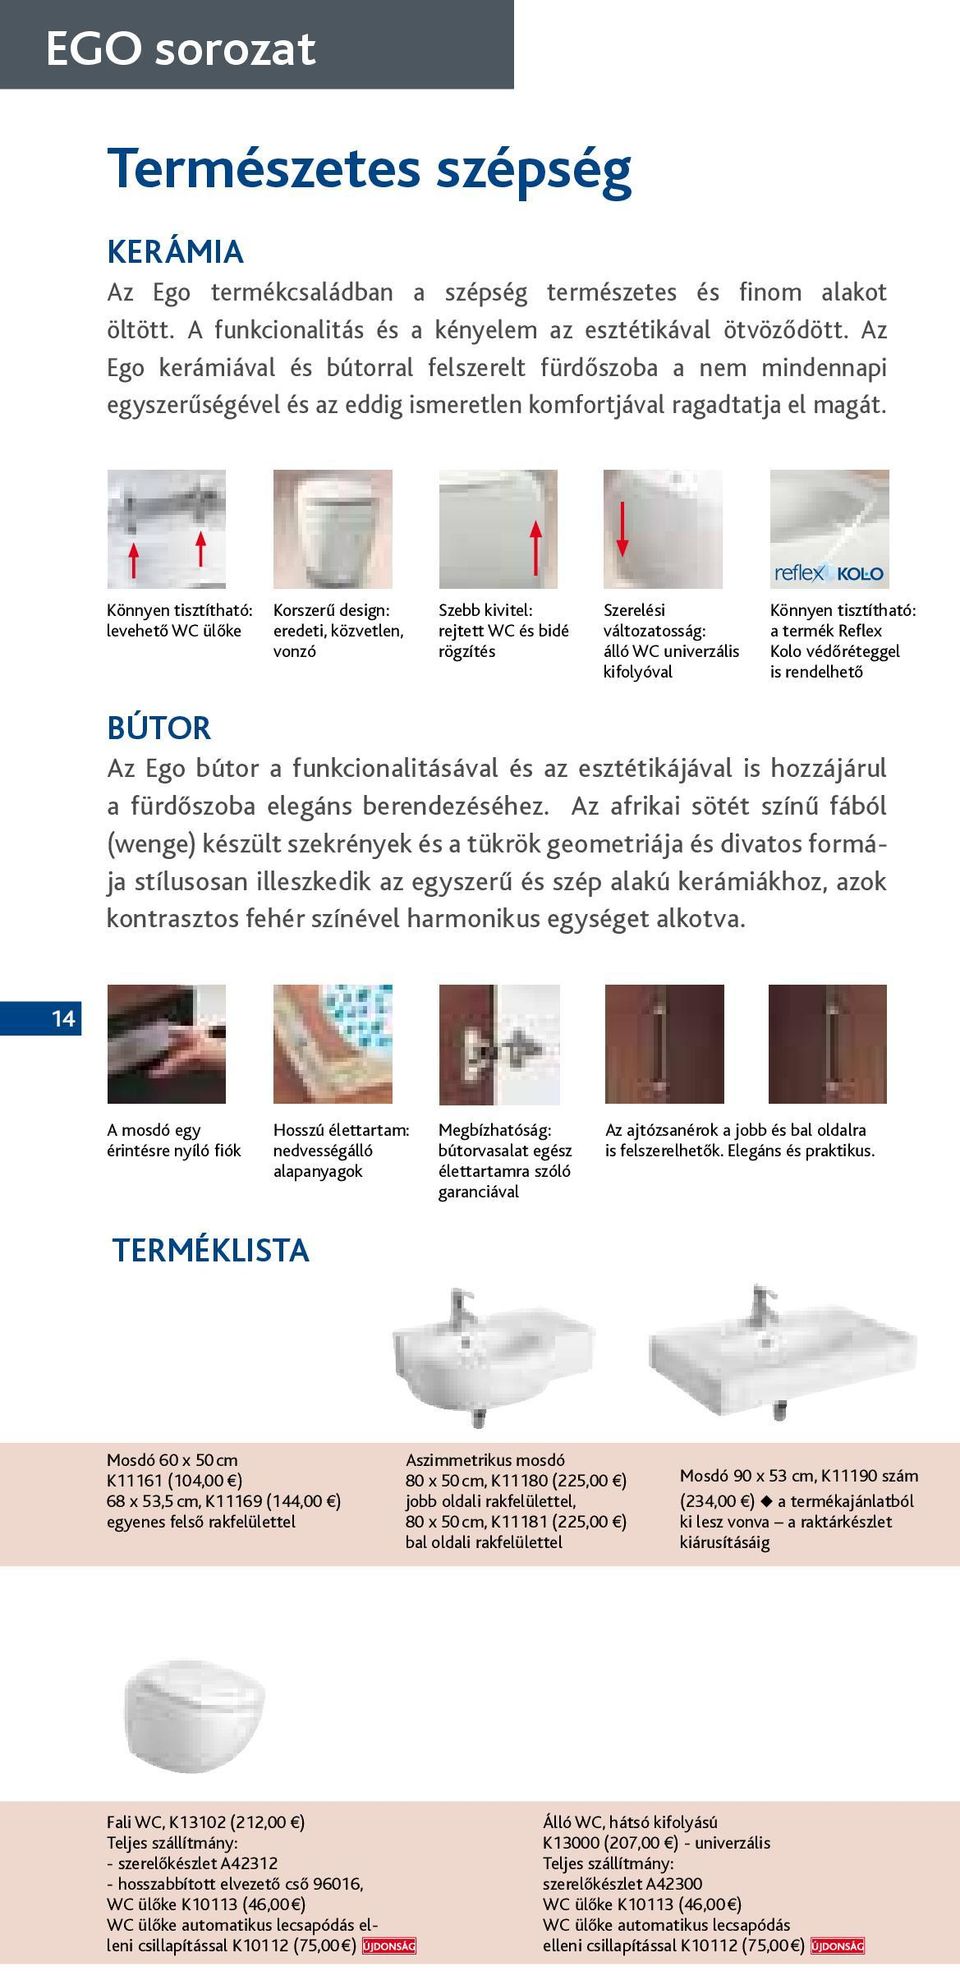 Könnyen tisztítható: levehető WC ülőke Korszerű design: eredeti, közvetlen, vonzó Szebb kivitel: rejtett WC és bidé rögzítés Szerelési változatosság: álló WC univerzális kifolyóval Könnyen